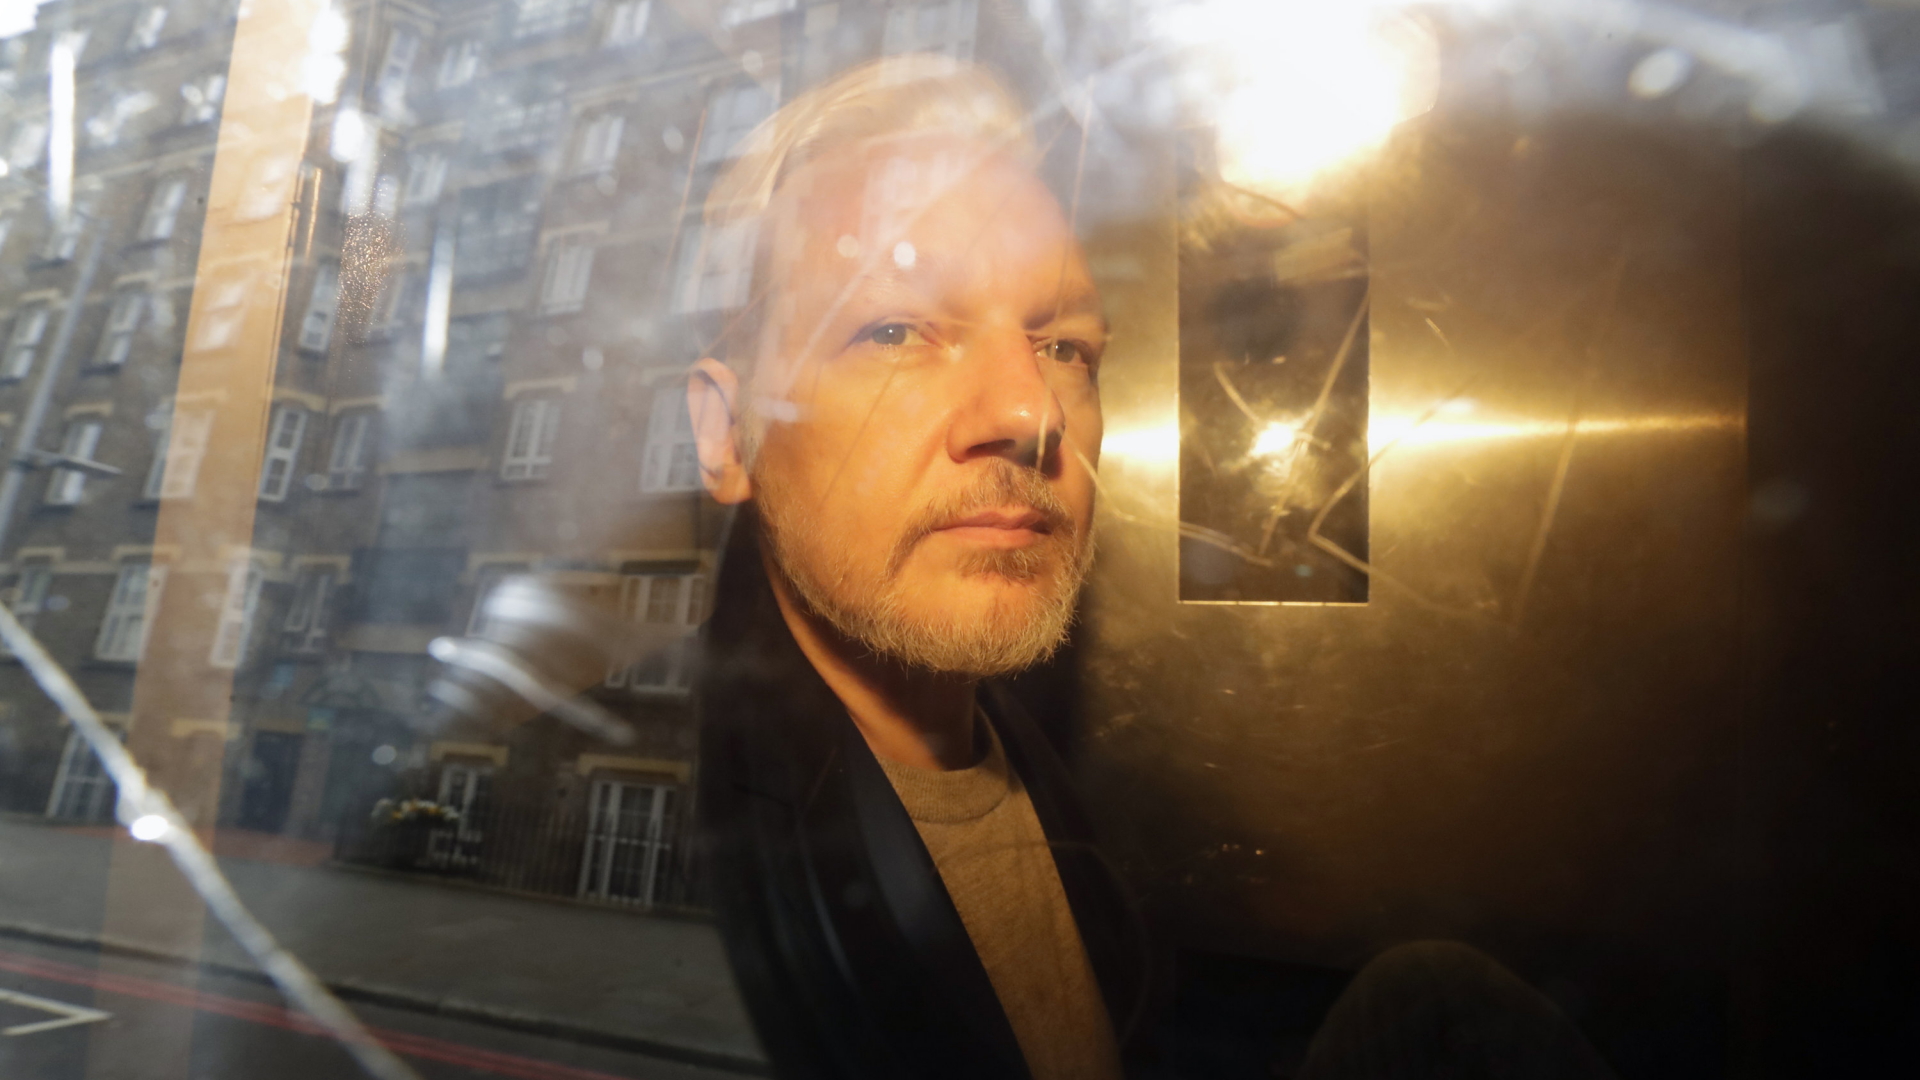 Internationale Medien: USA sollen Assange-Verfolgung beenden